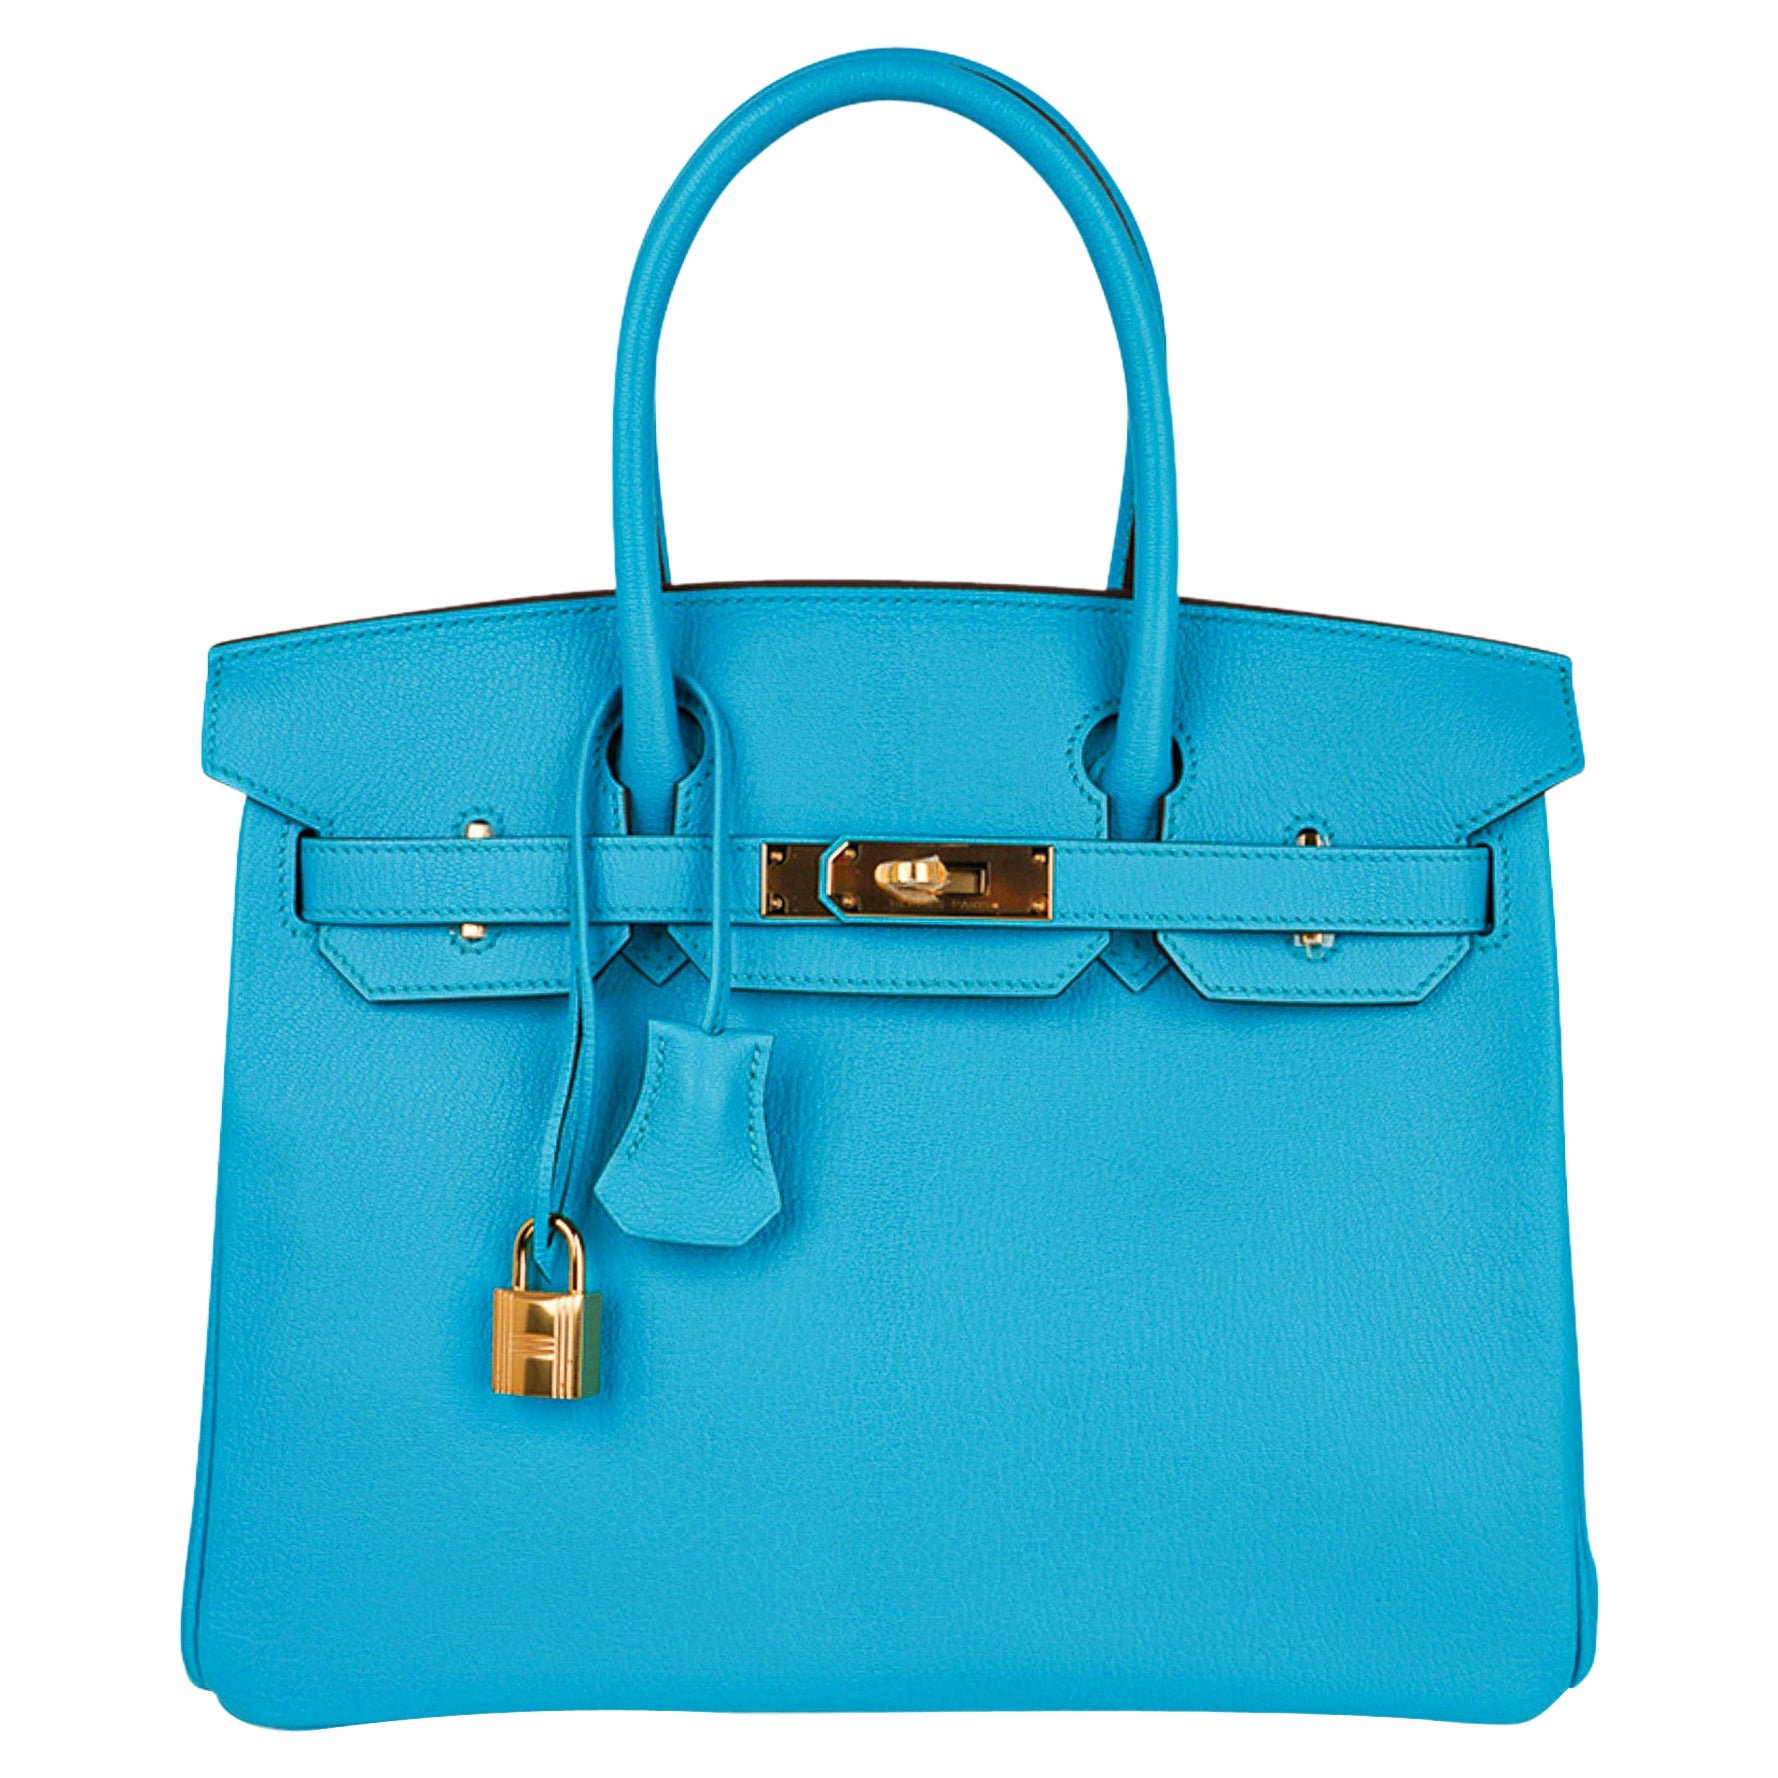 Hermes Birkin Bag - 412 For Sale on 1stDibs | birkin bag for sale